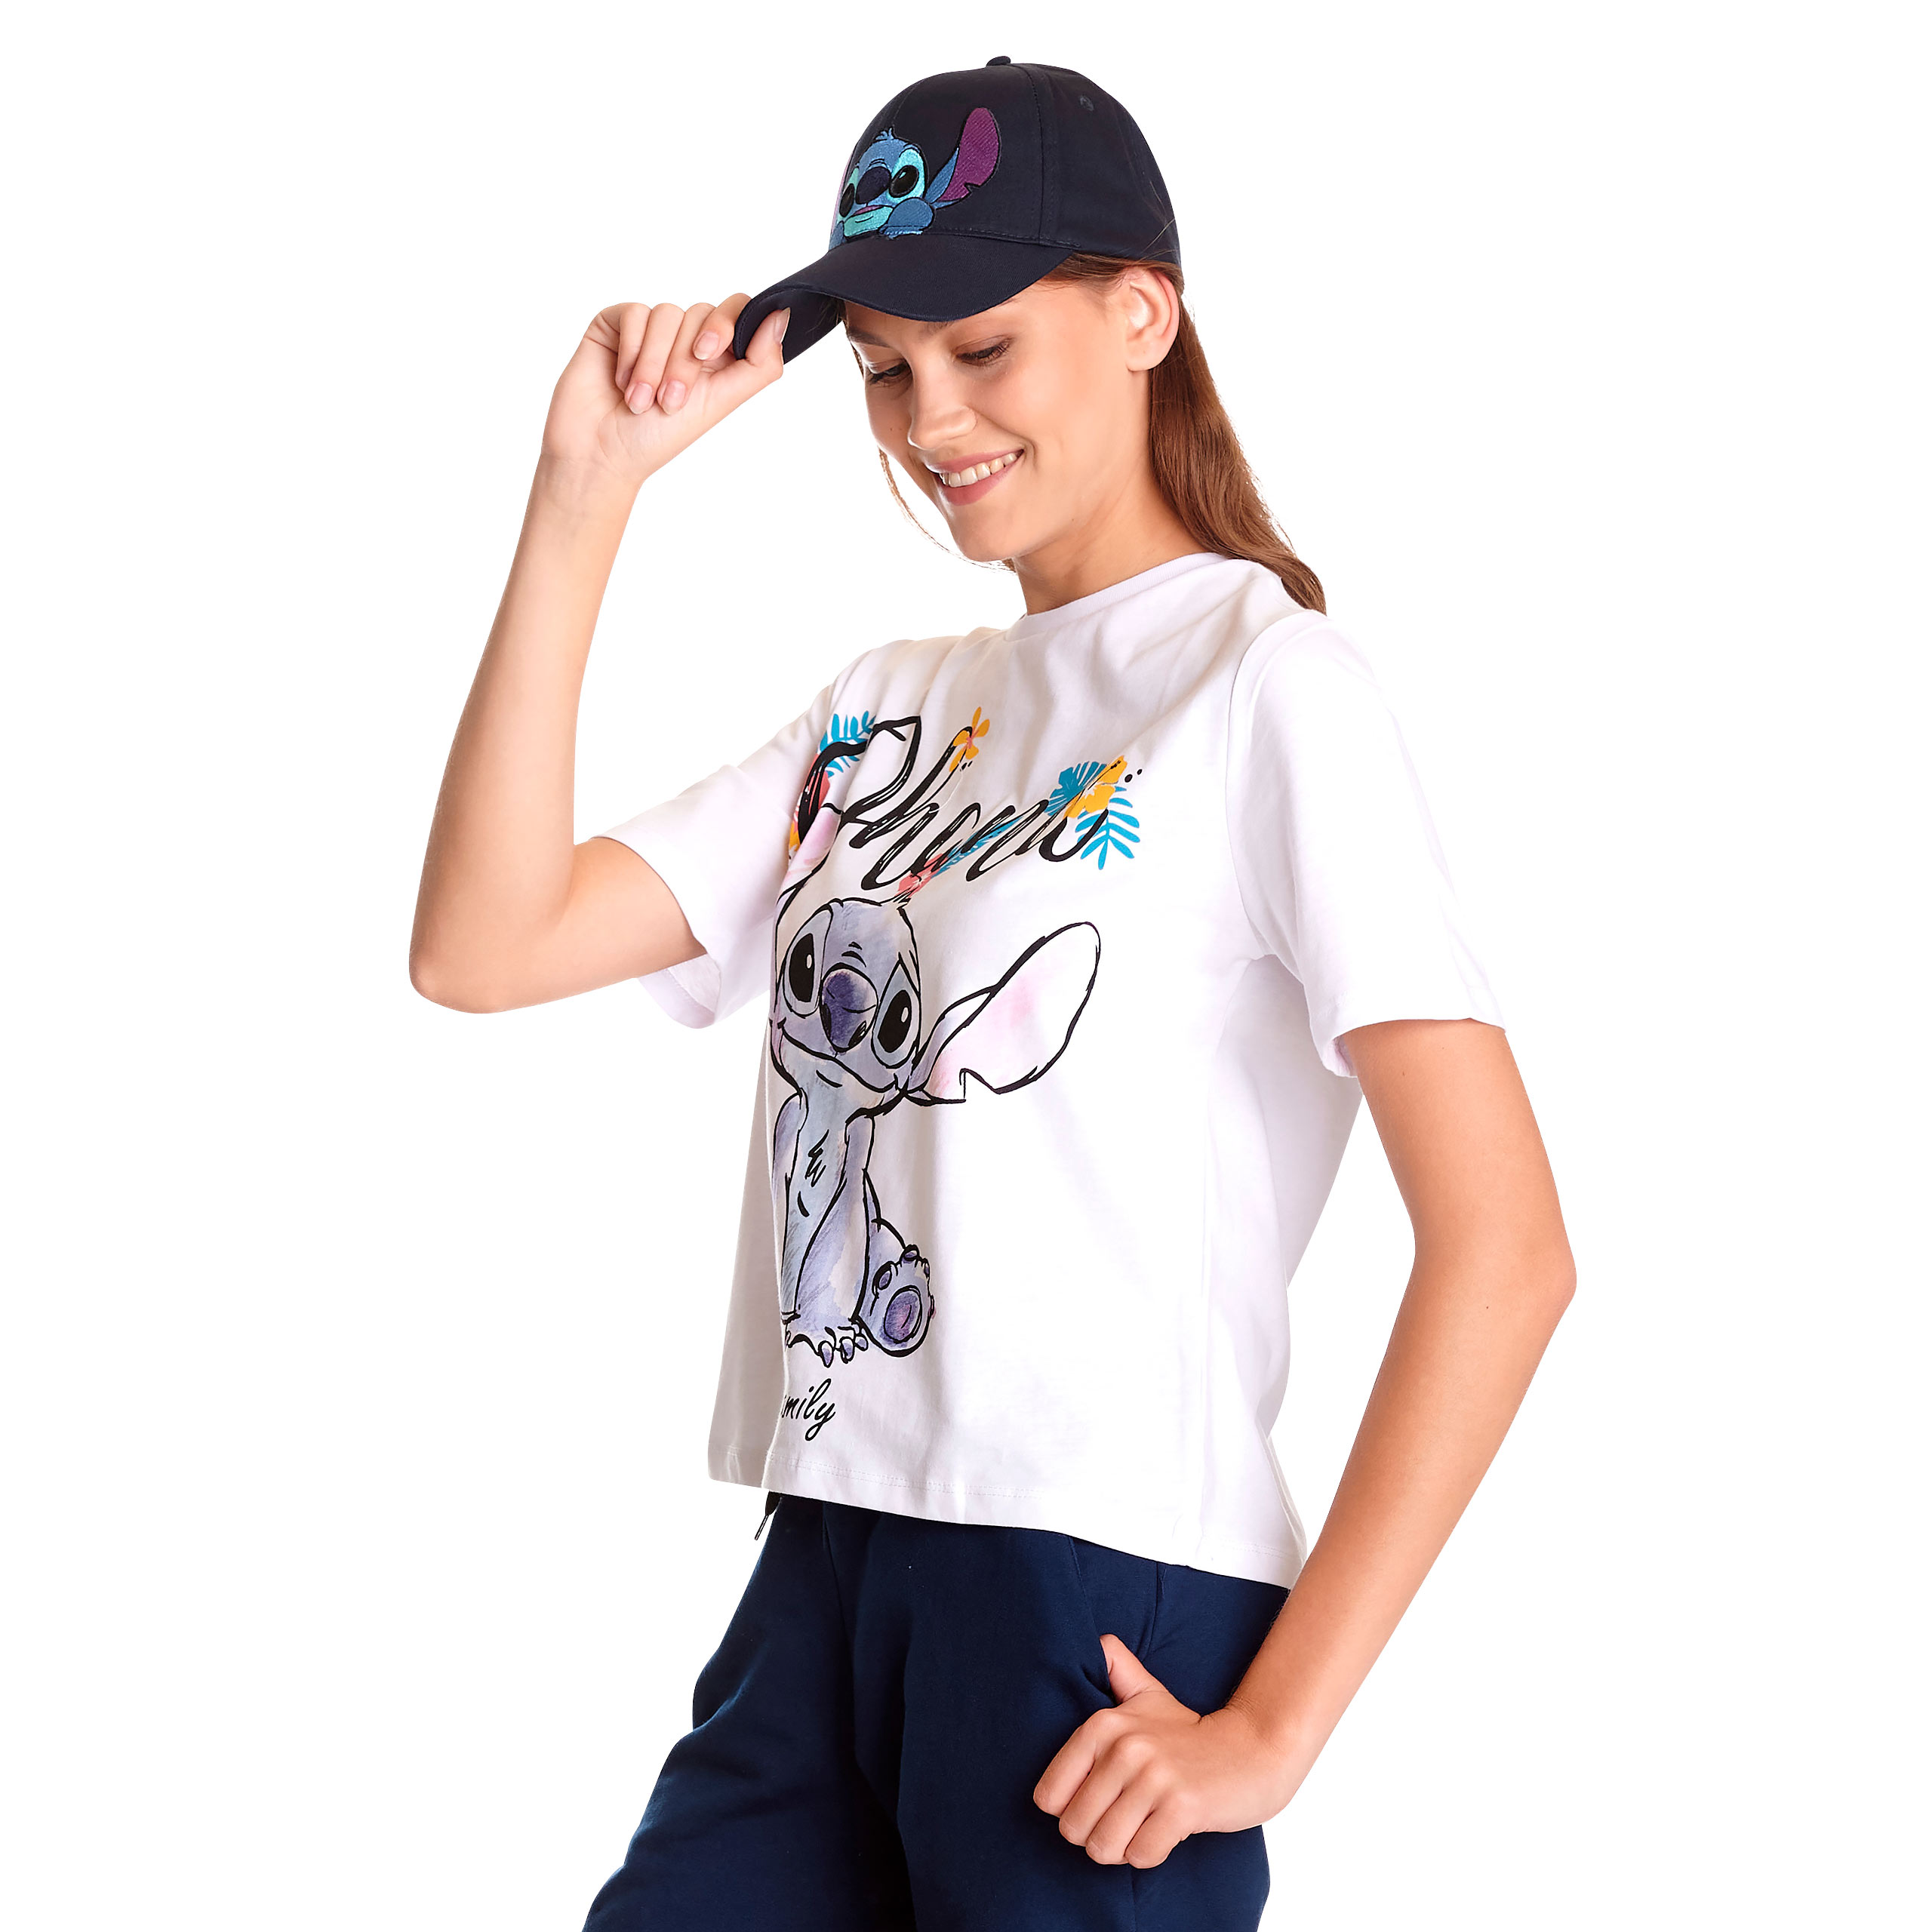 Lilo & Stitch - Ohana T-Shirt Damen weiß